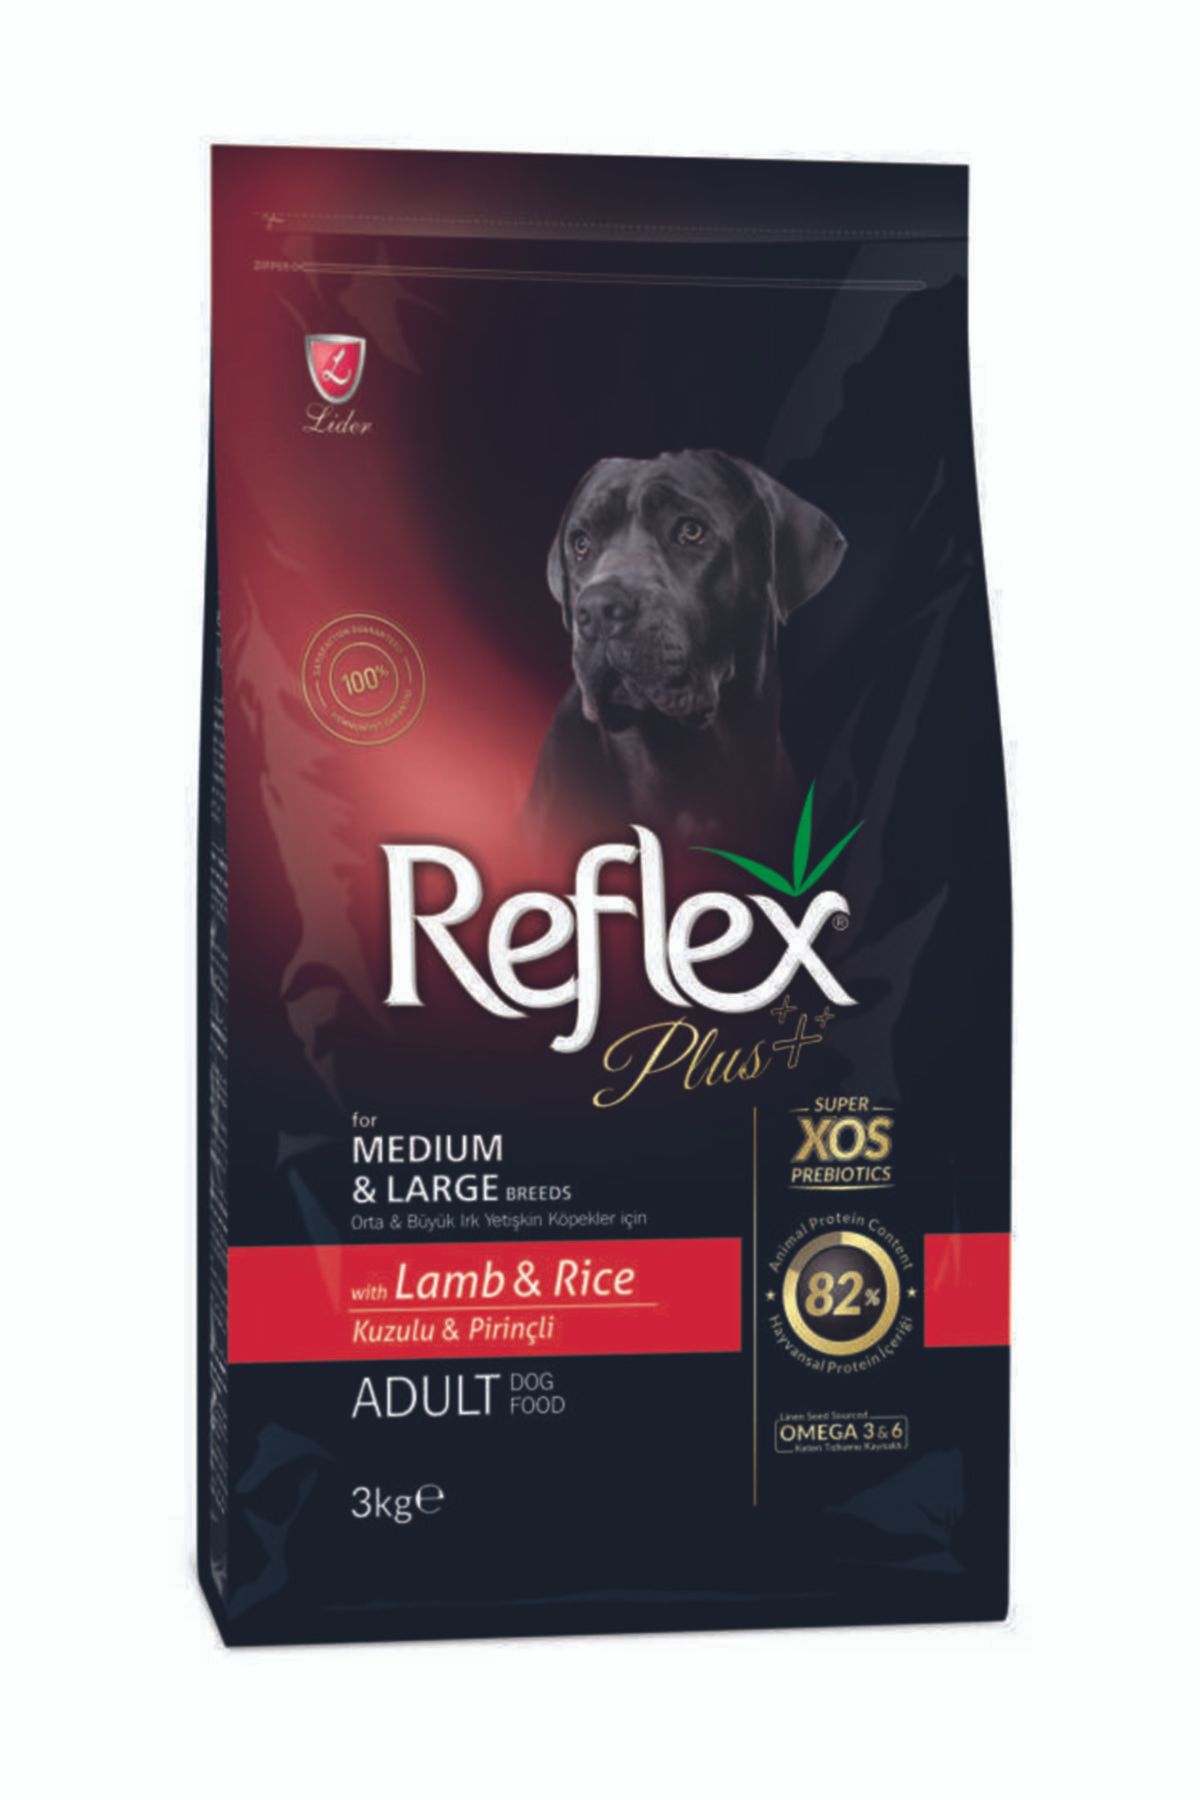 Reflex Plus Orta Ve Büyük Irk Yetişkin Köpekler Için Kuzulu & Pirinçli Köpek Maması 3 Kg